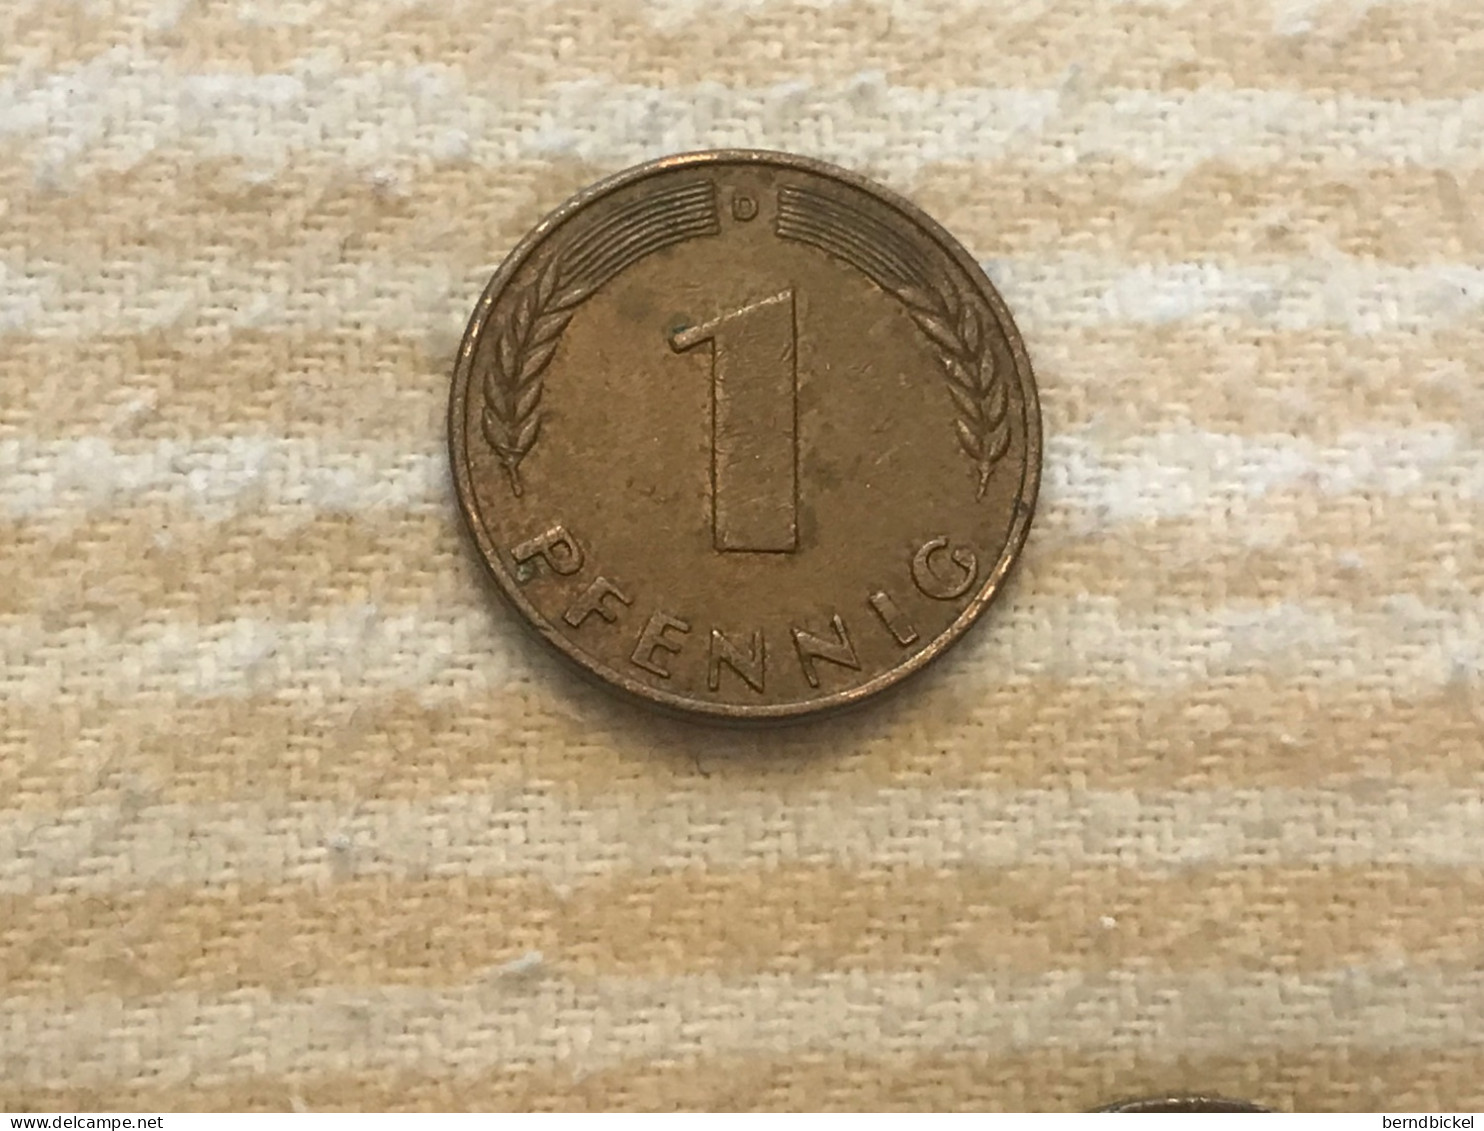 Münze Münzen Umlaufmünze Deutschland 1 Pfennig 1950 Münzzeichen D - 1 Pfennig